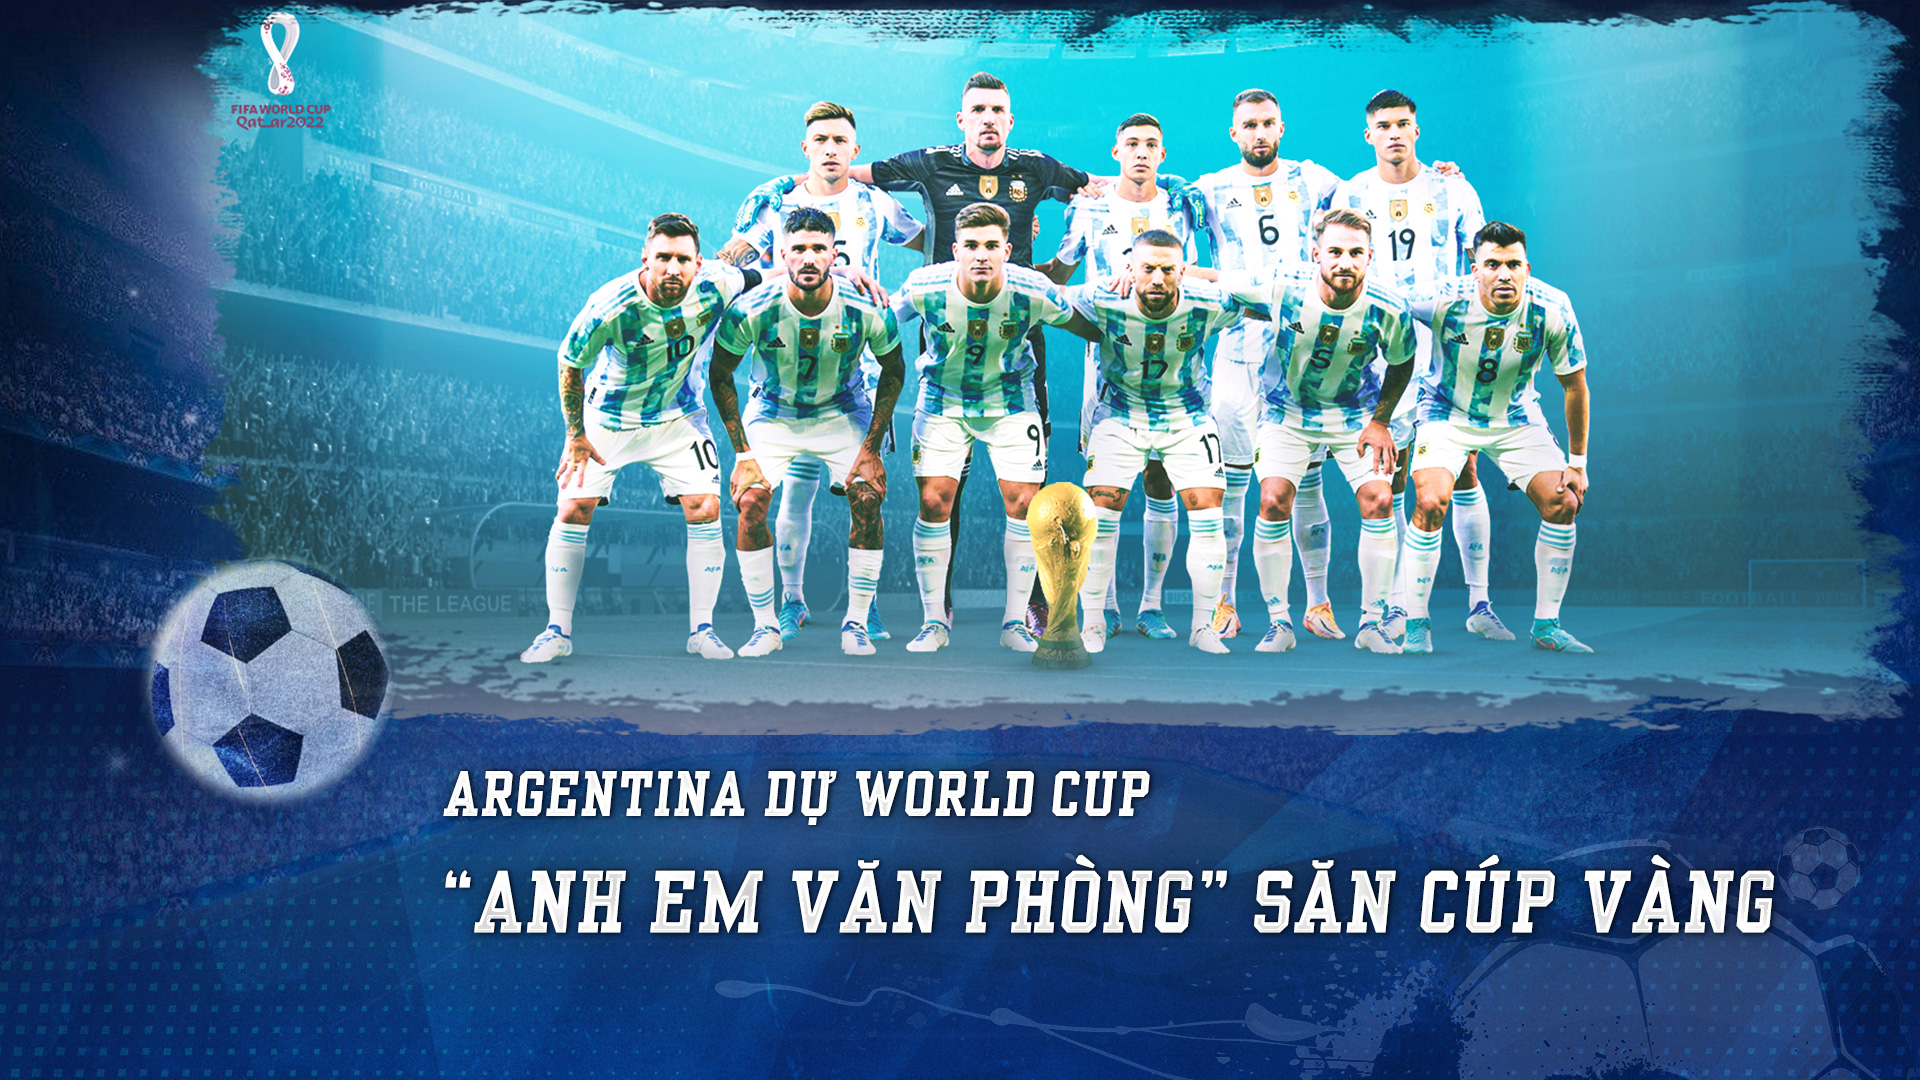 Đội hình Argentina: Điển hình là sự kết hợp hoàn hảo giữa những cầu thủ tài năng và sự lãnh đạo nghiêm túc của HLV Lionel Scaloni đã khẳng định thành công cho đội tuyển Argentina trong những giải đấu gần đây. Cùng xem qua đội hình ấn tượng của Argentina để hiểu rõ hơn về chiến thuật và phong độ của các cầu thủ.